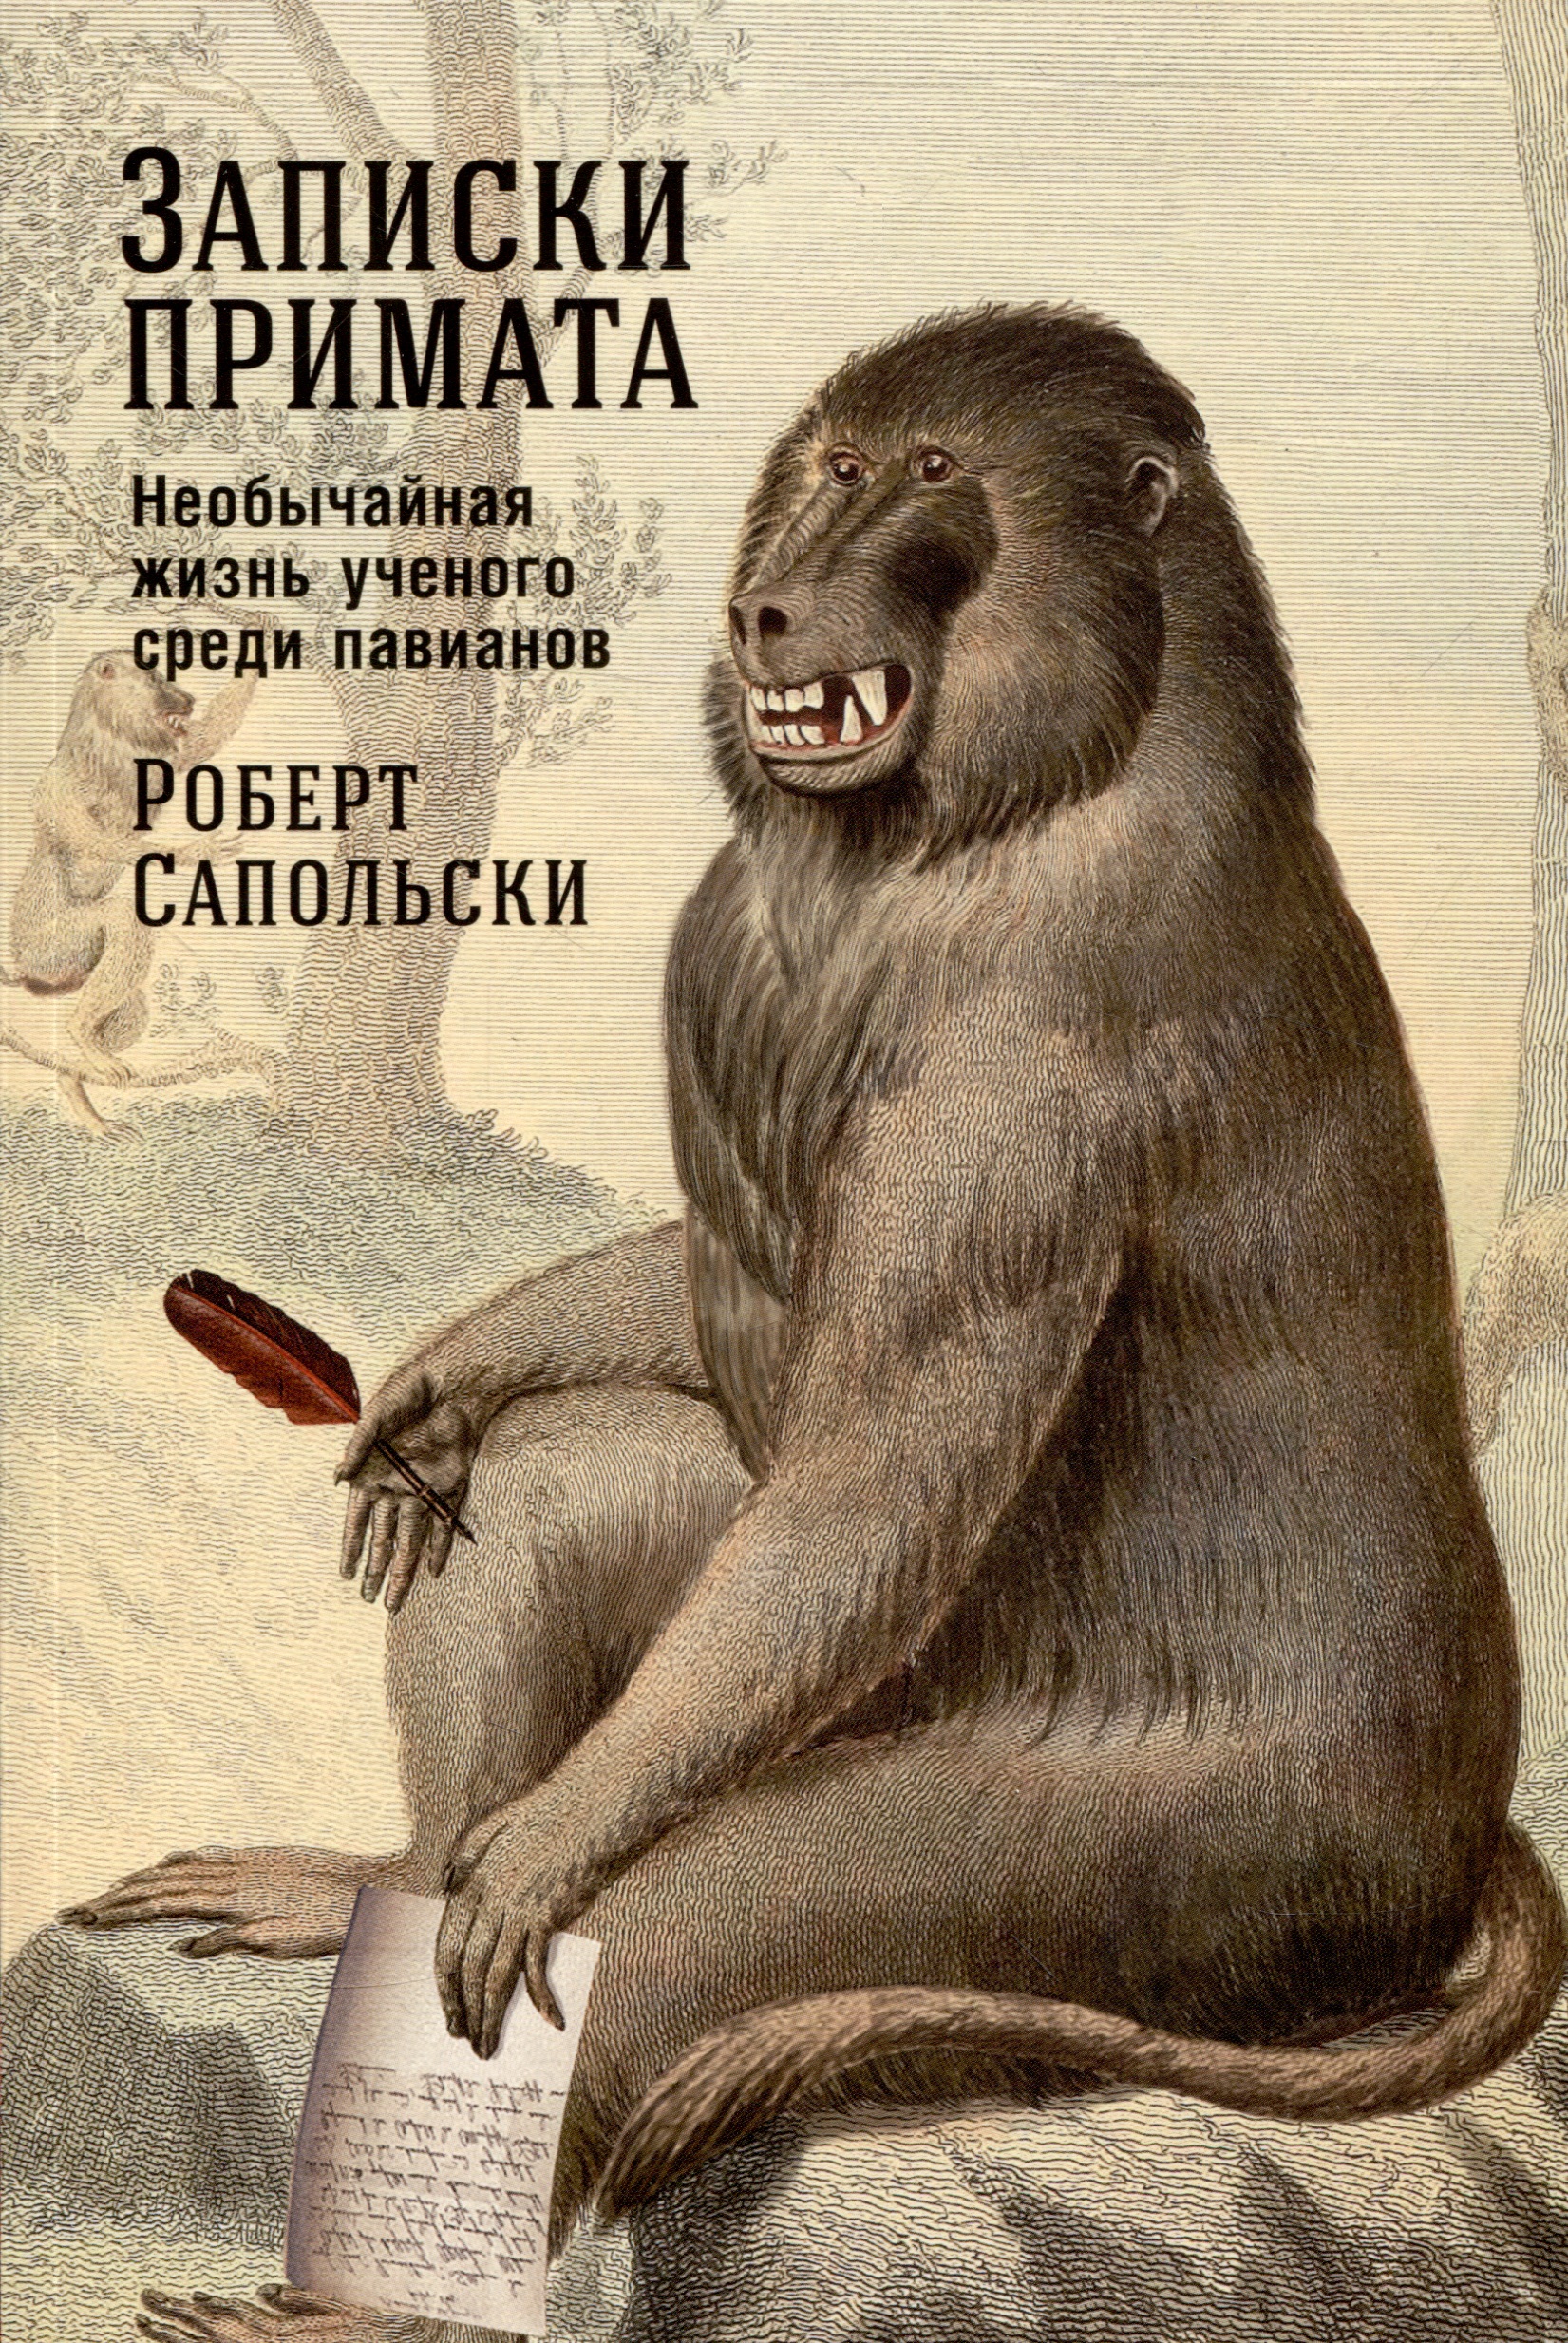 Сапольски Роберт - Записки примата: необычайная жизнь ученого среди павианов